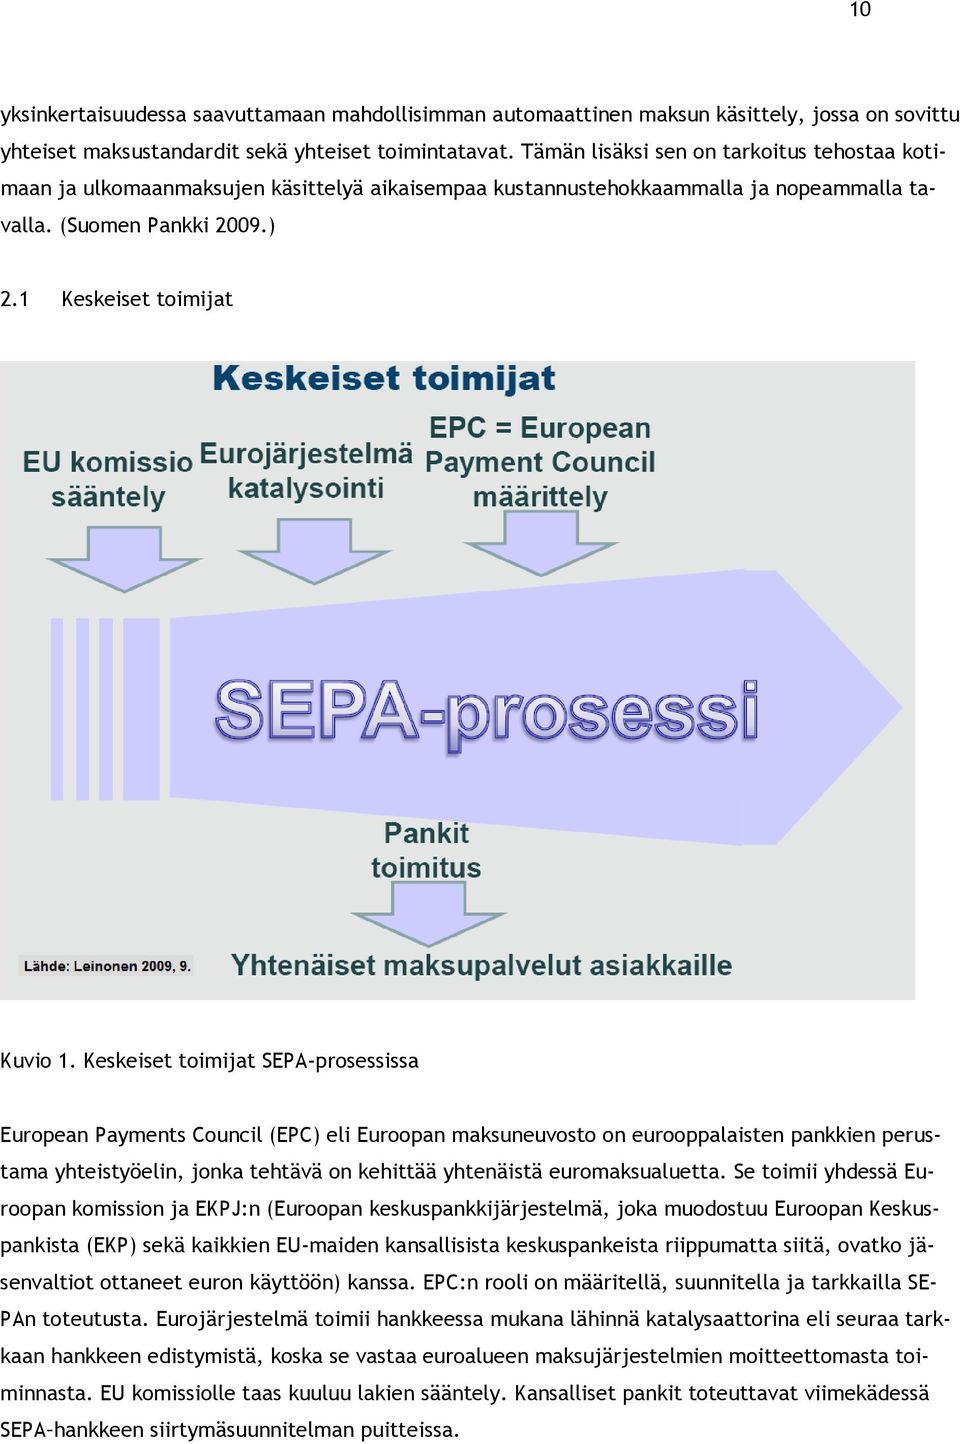 Keskeiset toimijat SEPA-prosessissa European Payments Council (EPC) eli Euroopan maksuneuvosto on eurooppalaisten pankkien perustama yhteistyöelin, jonka tehtävä on kehittää yhtenäistä